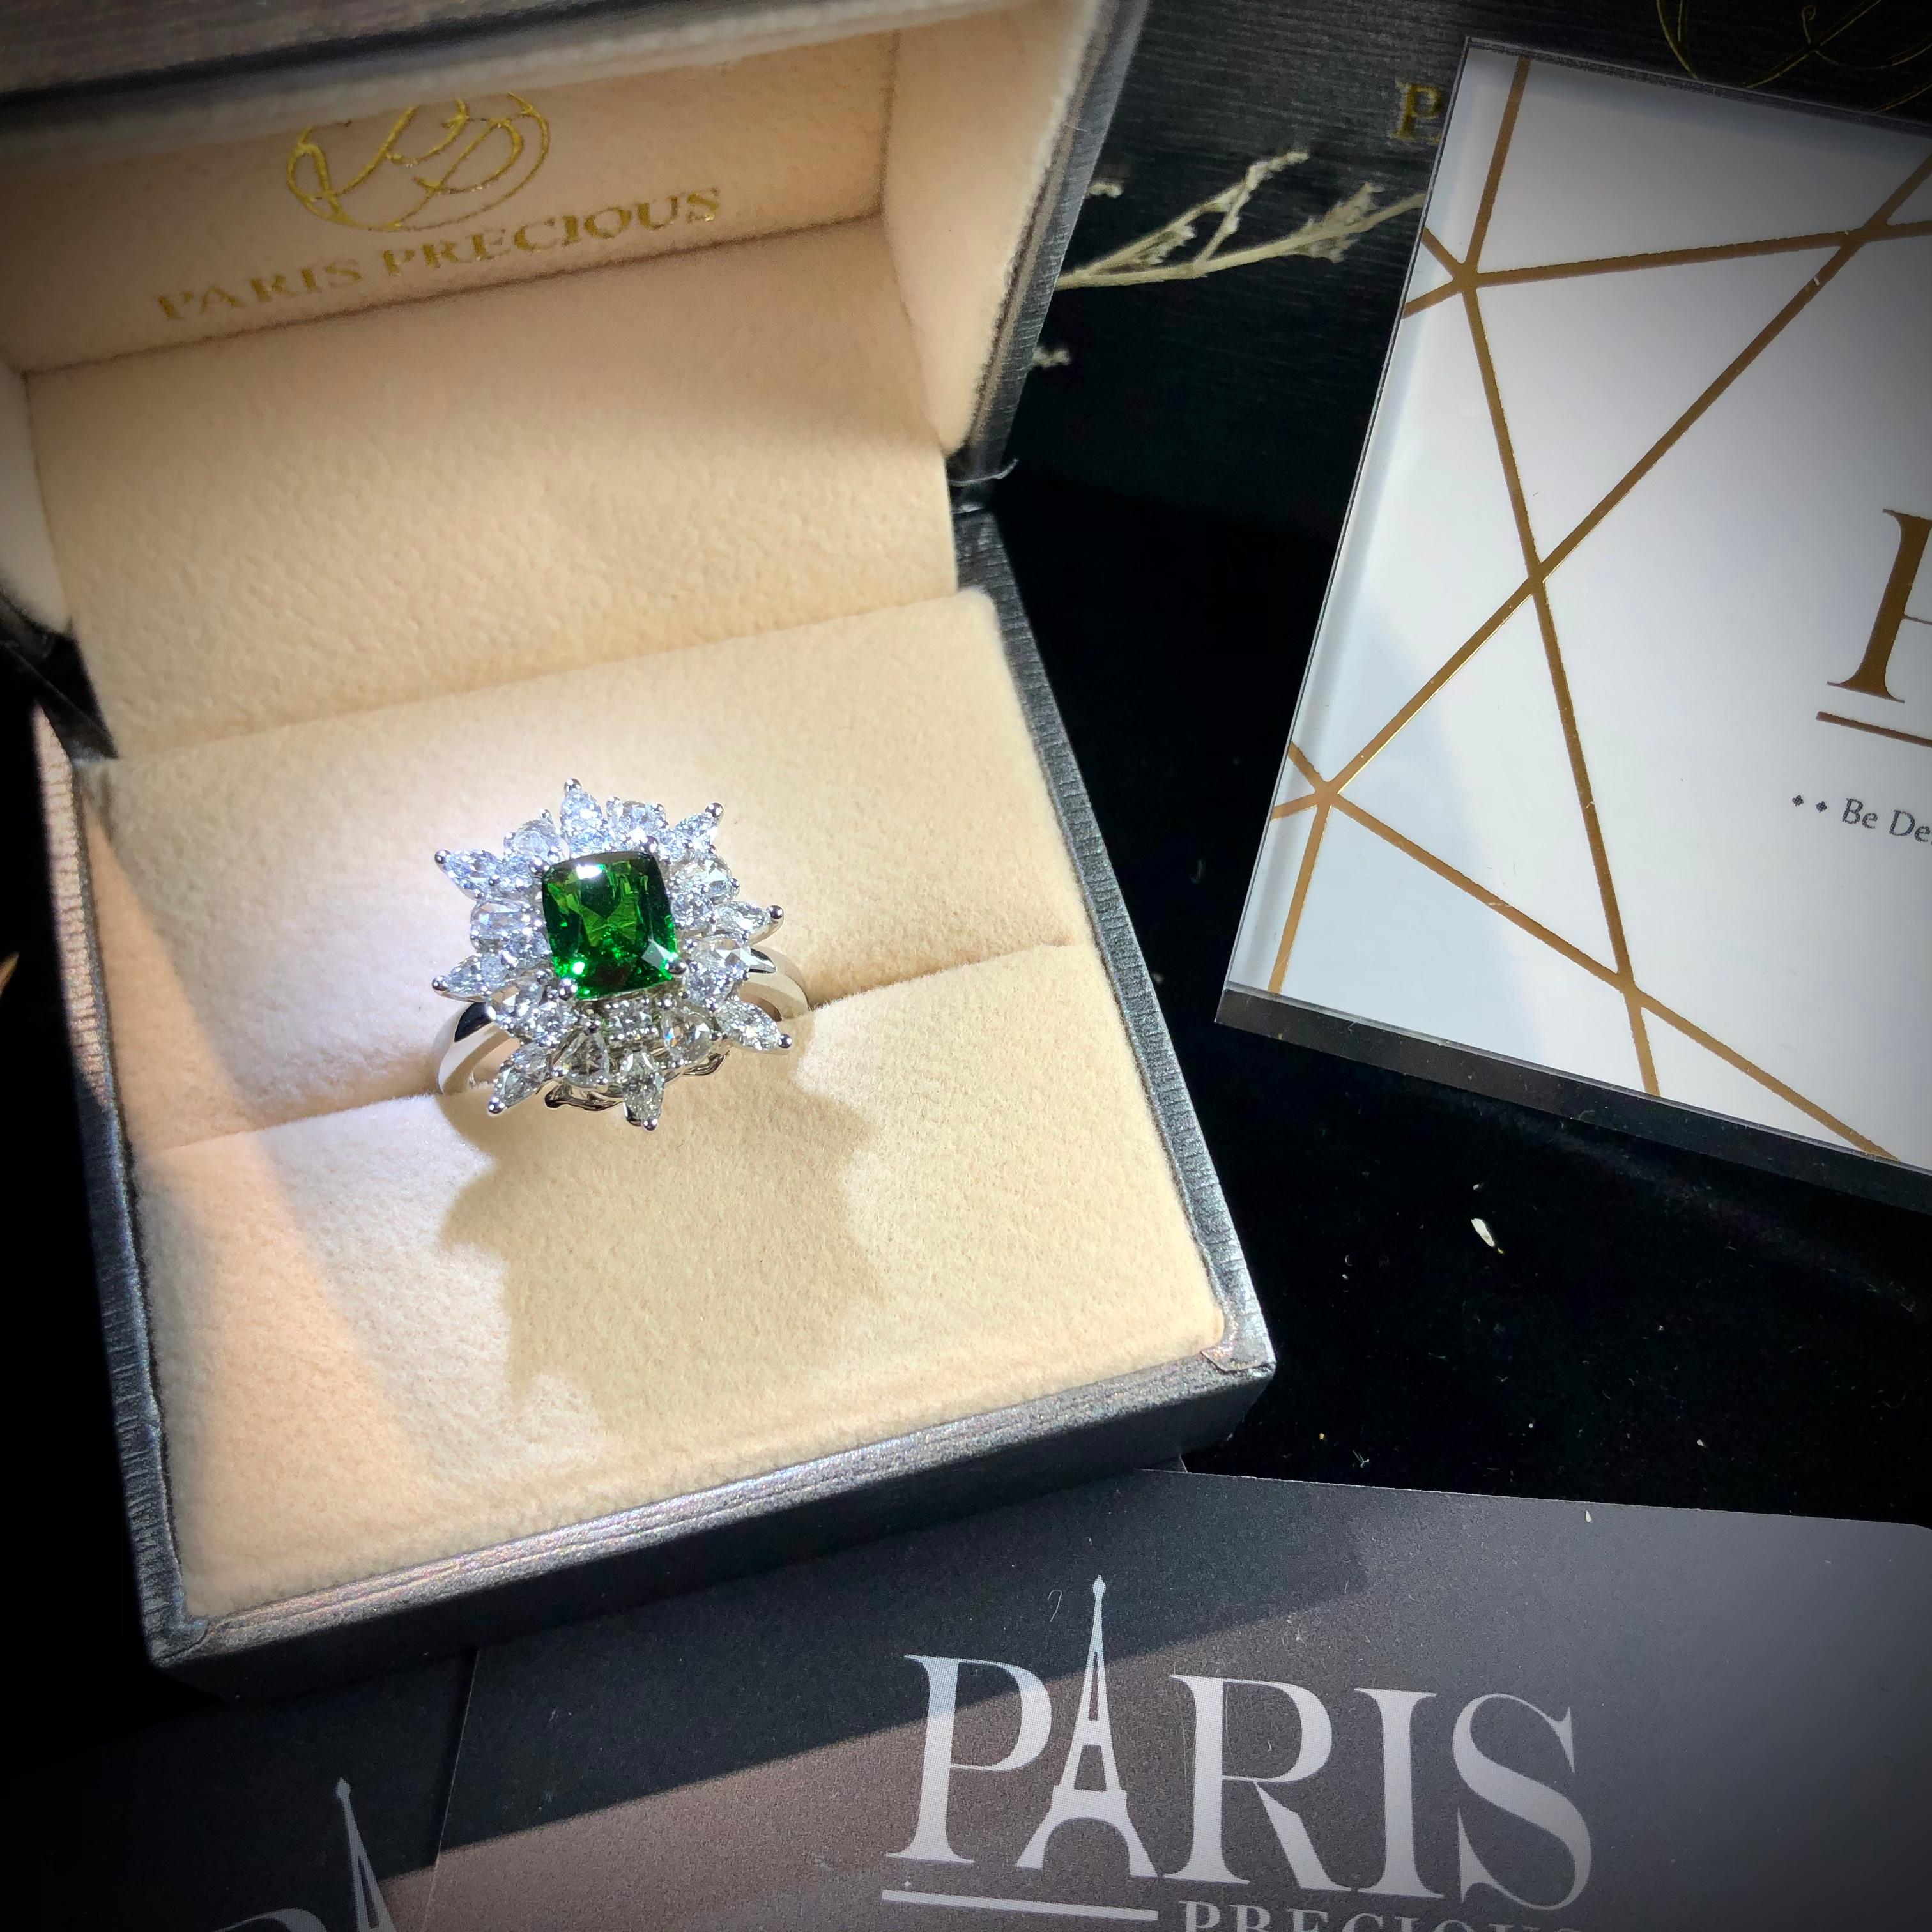 Paris Craft House 1.56 Carat Tsavorite Diamond Ring in 18 Karat White Gold For Sale 4